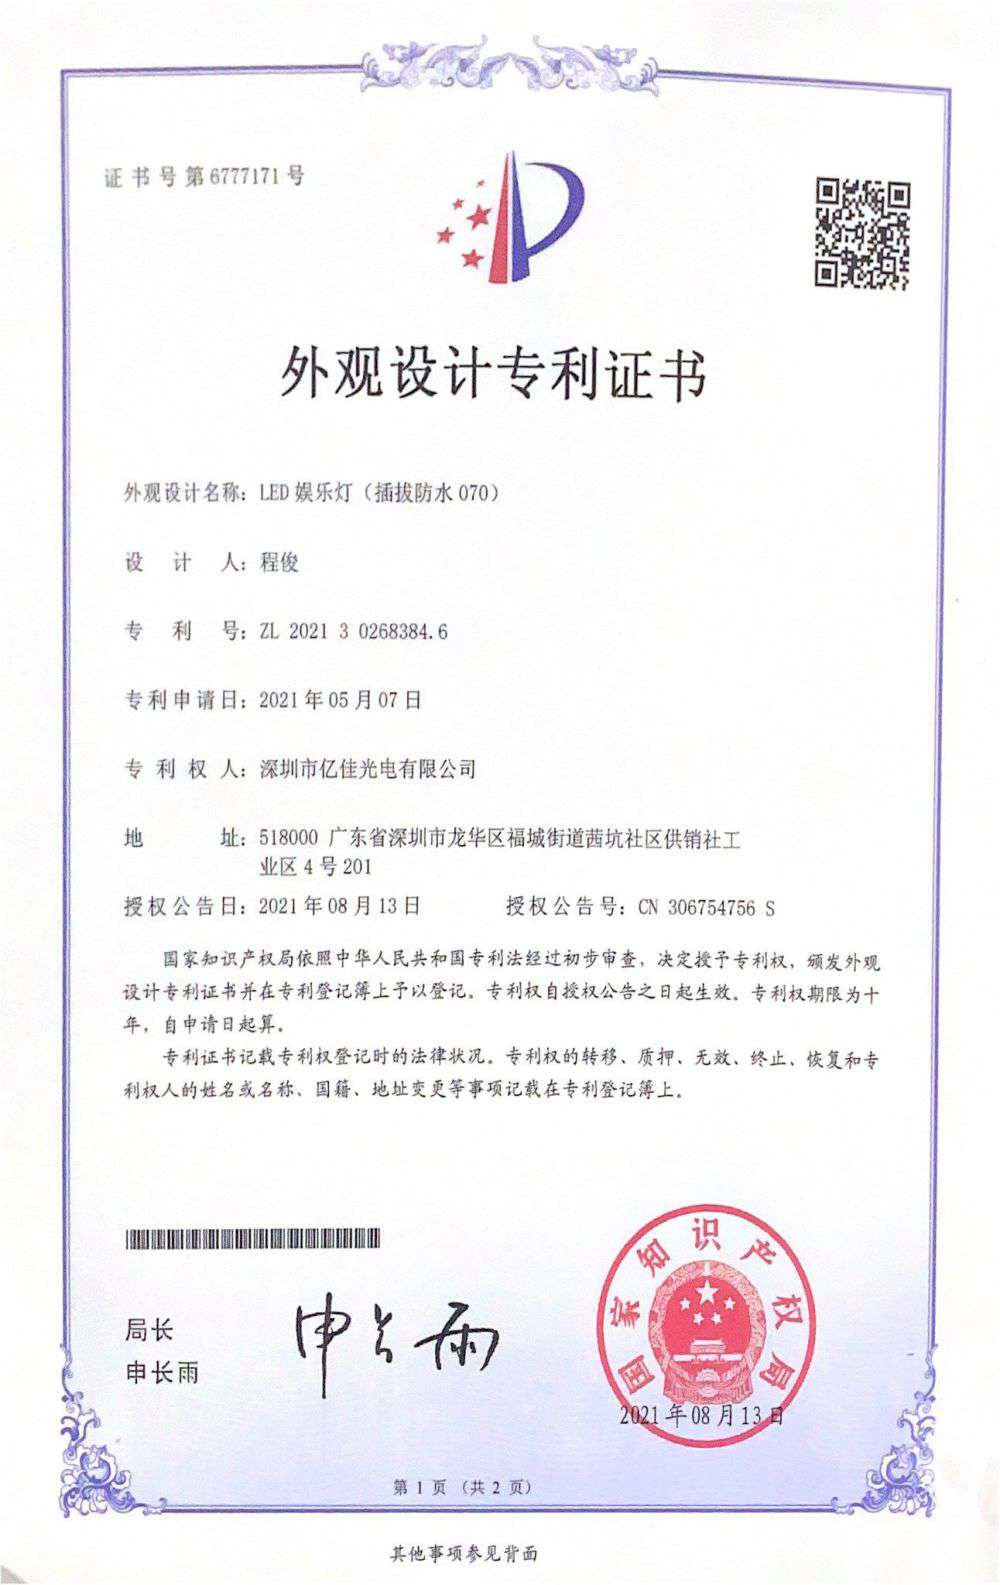 深圳市k8凯发k8凯发有限公司LED娱乐灯070获得外观设计专利证书